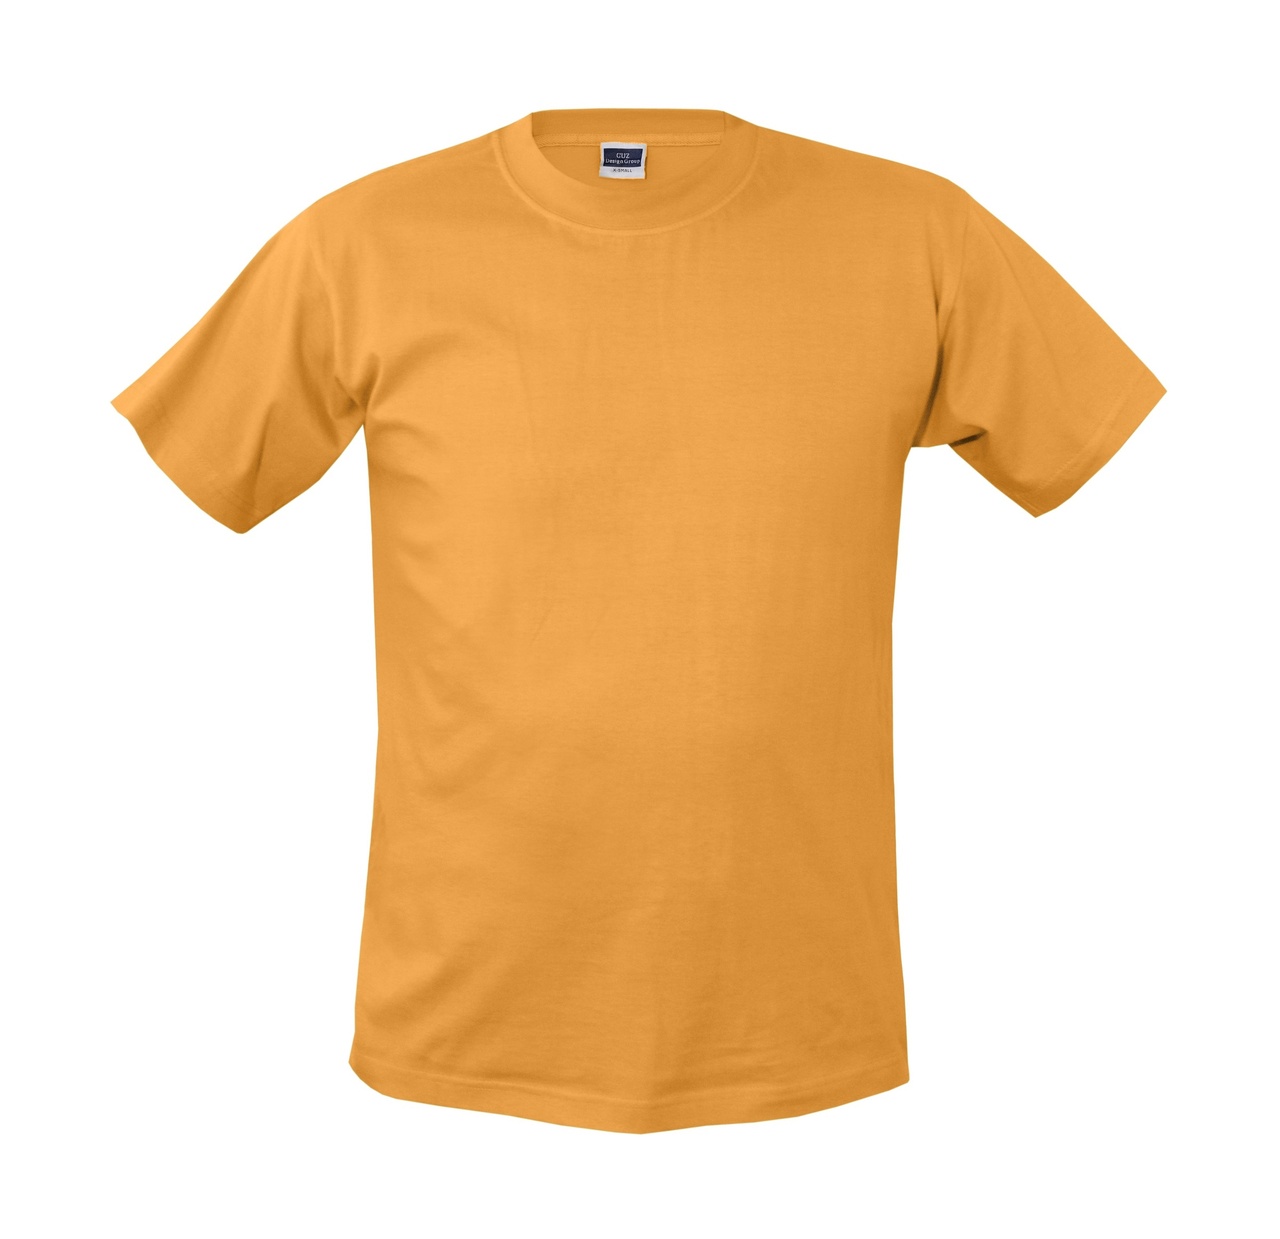 Invite T-Shirt, Unisex - Smörblomma - 2xl